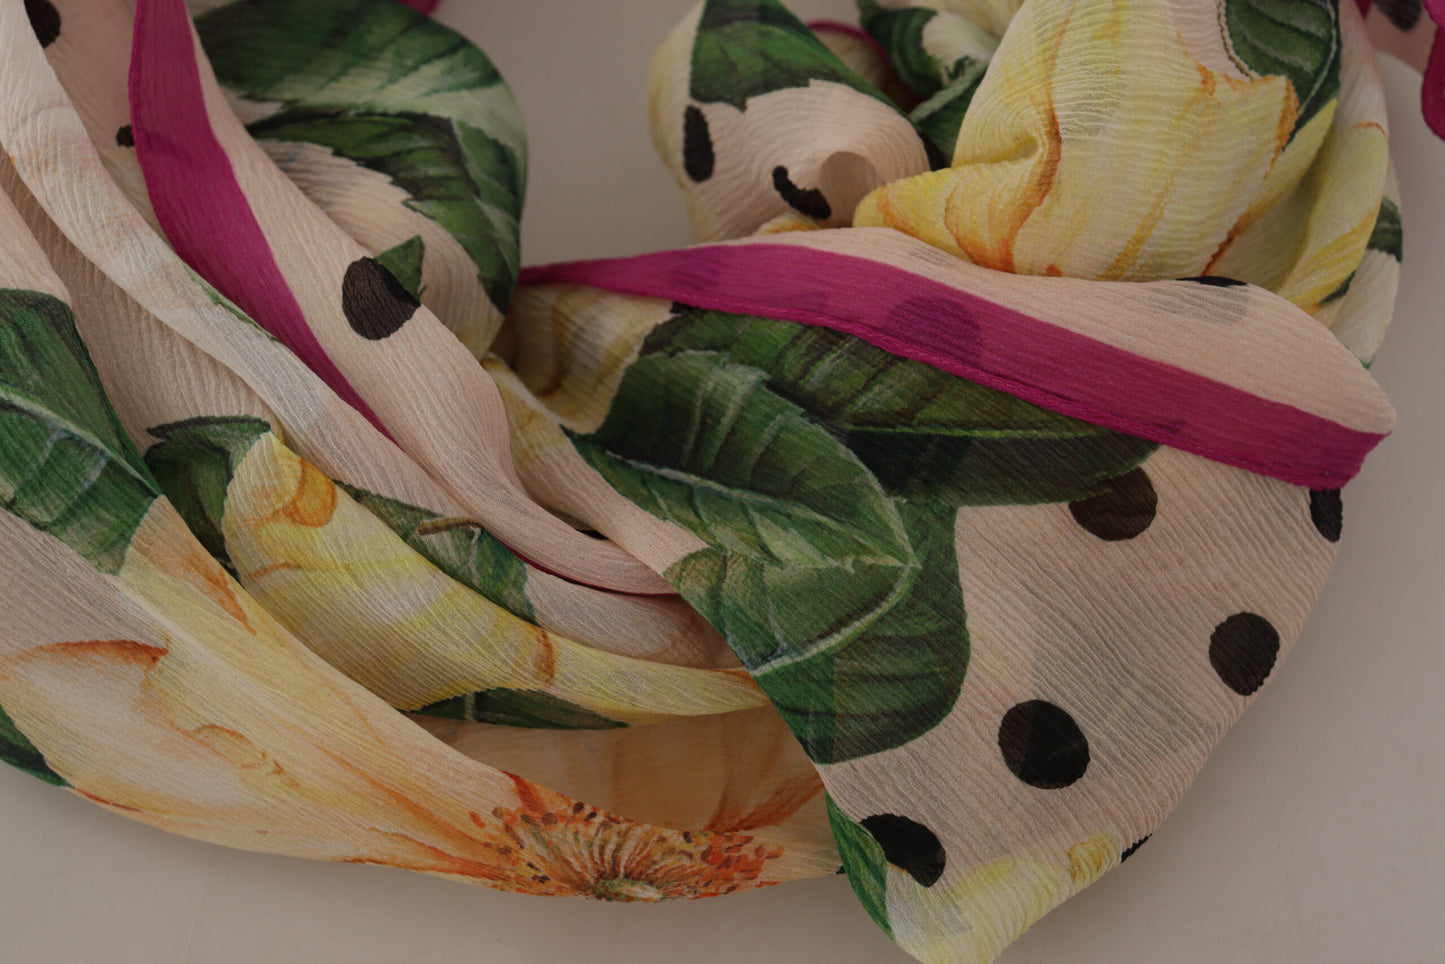 Elegant Floral Silk Shawl Wrap